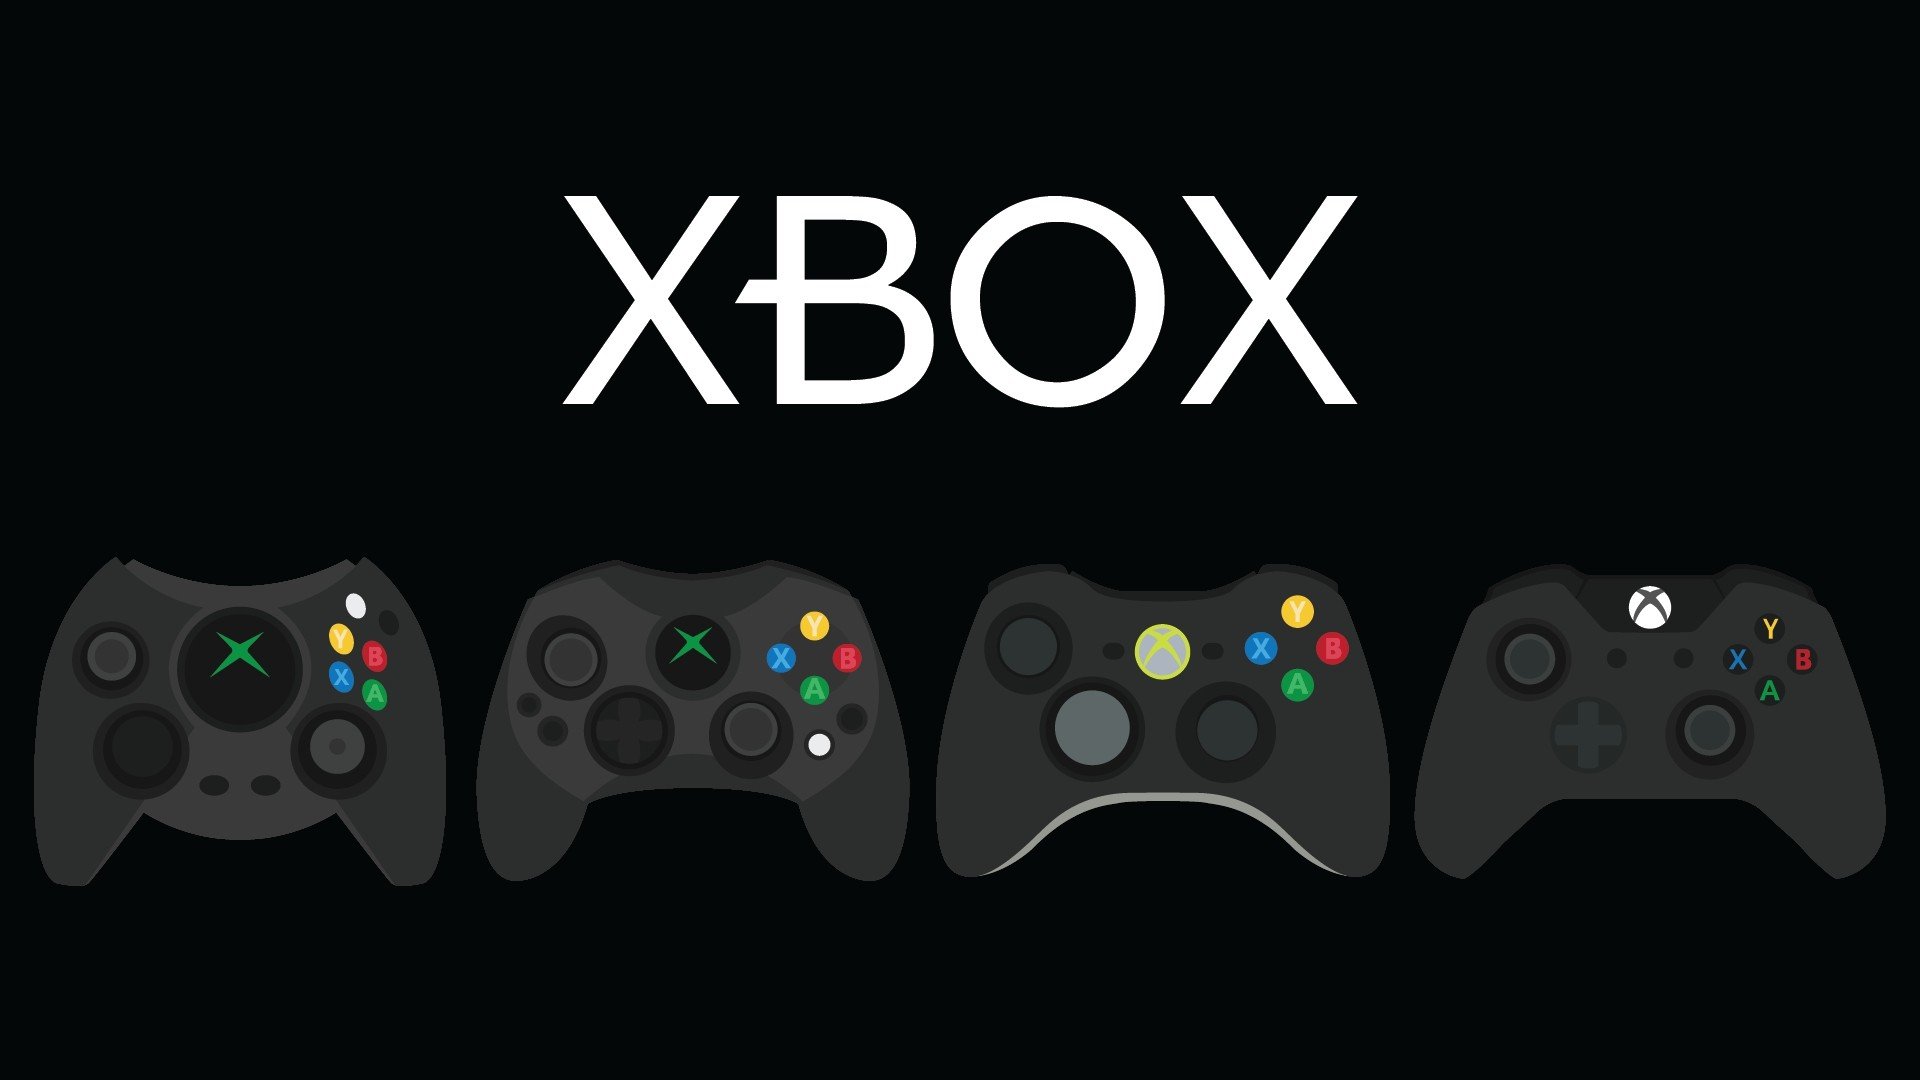 Jogos de graça! Xbox libera games em junho; veja quais